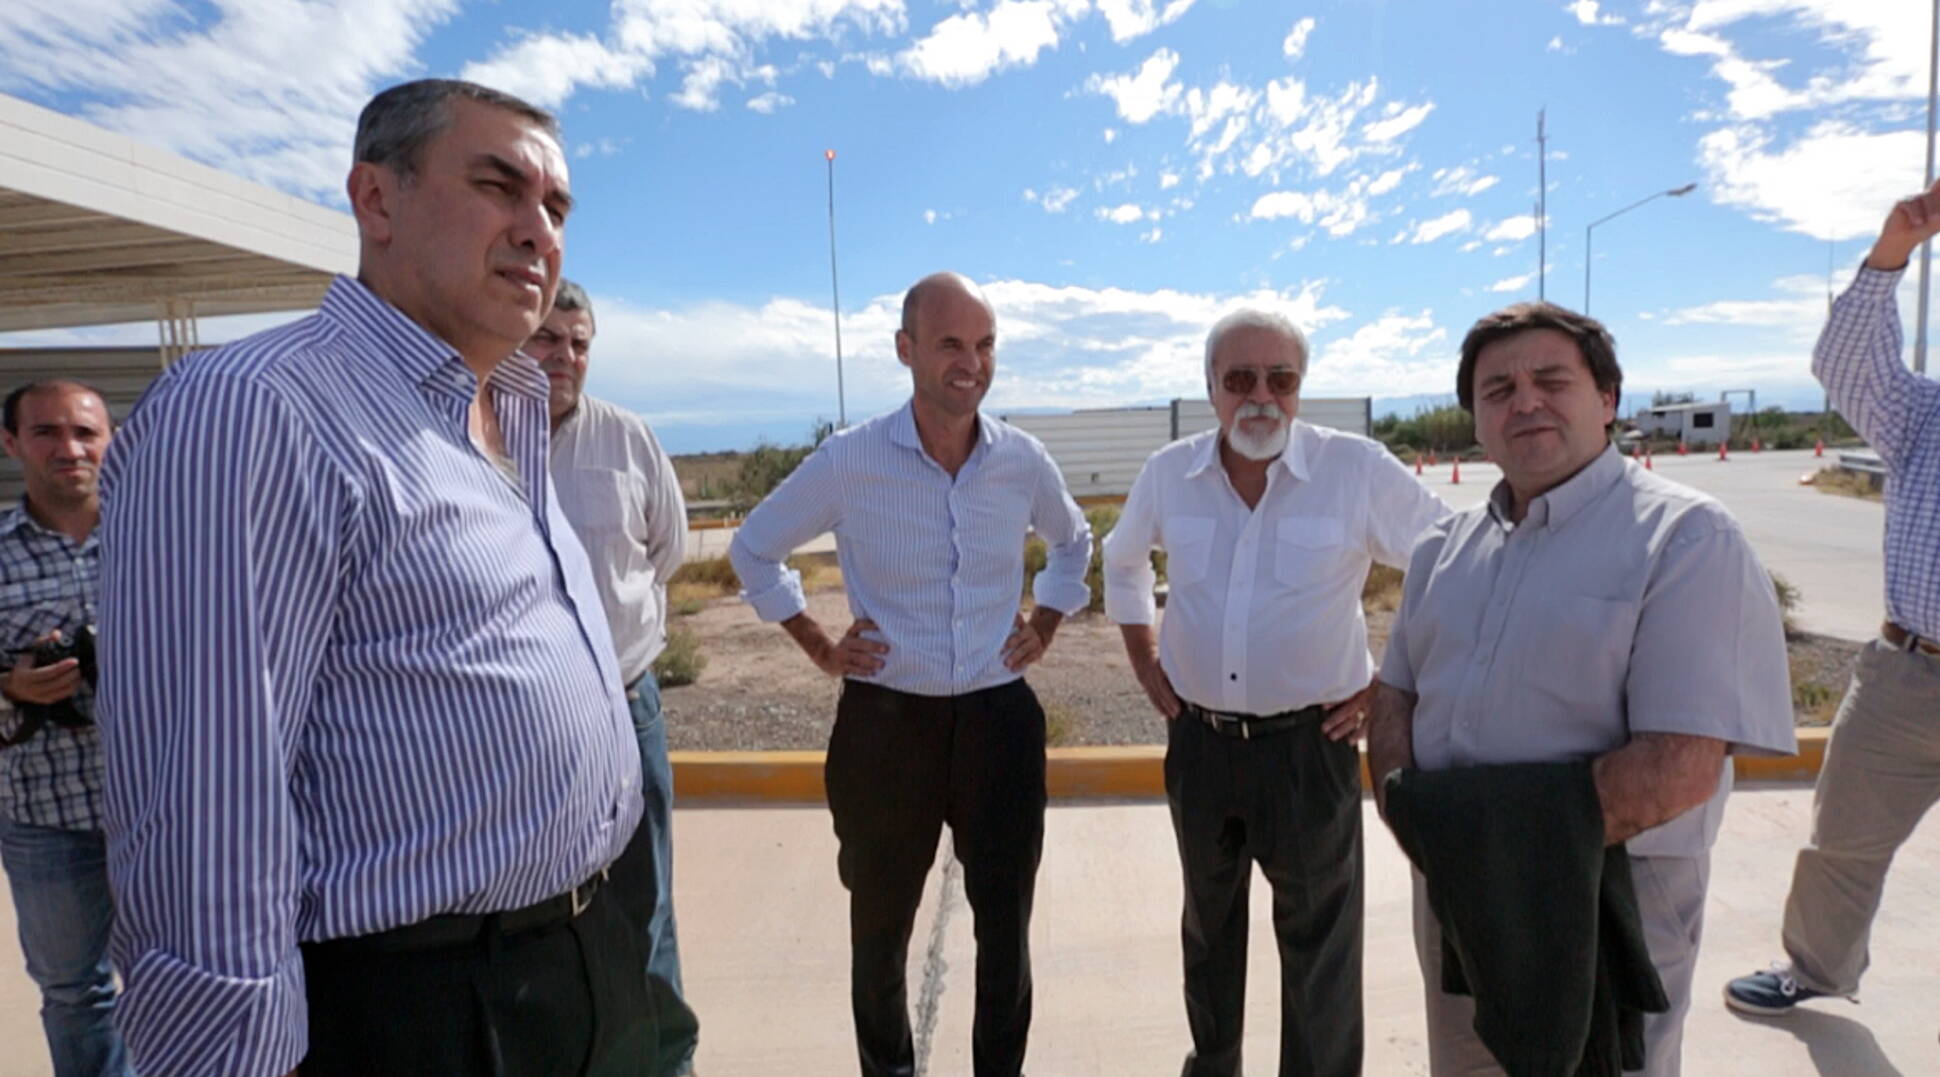 Ruta 40: avanzan las obras de la autopista que unirá Mendoza y San Juan